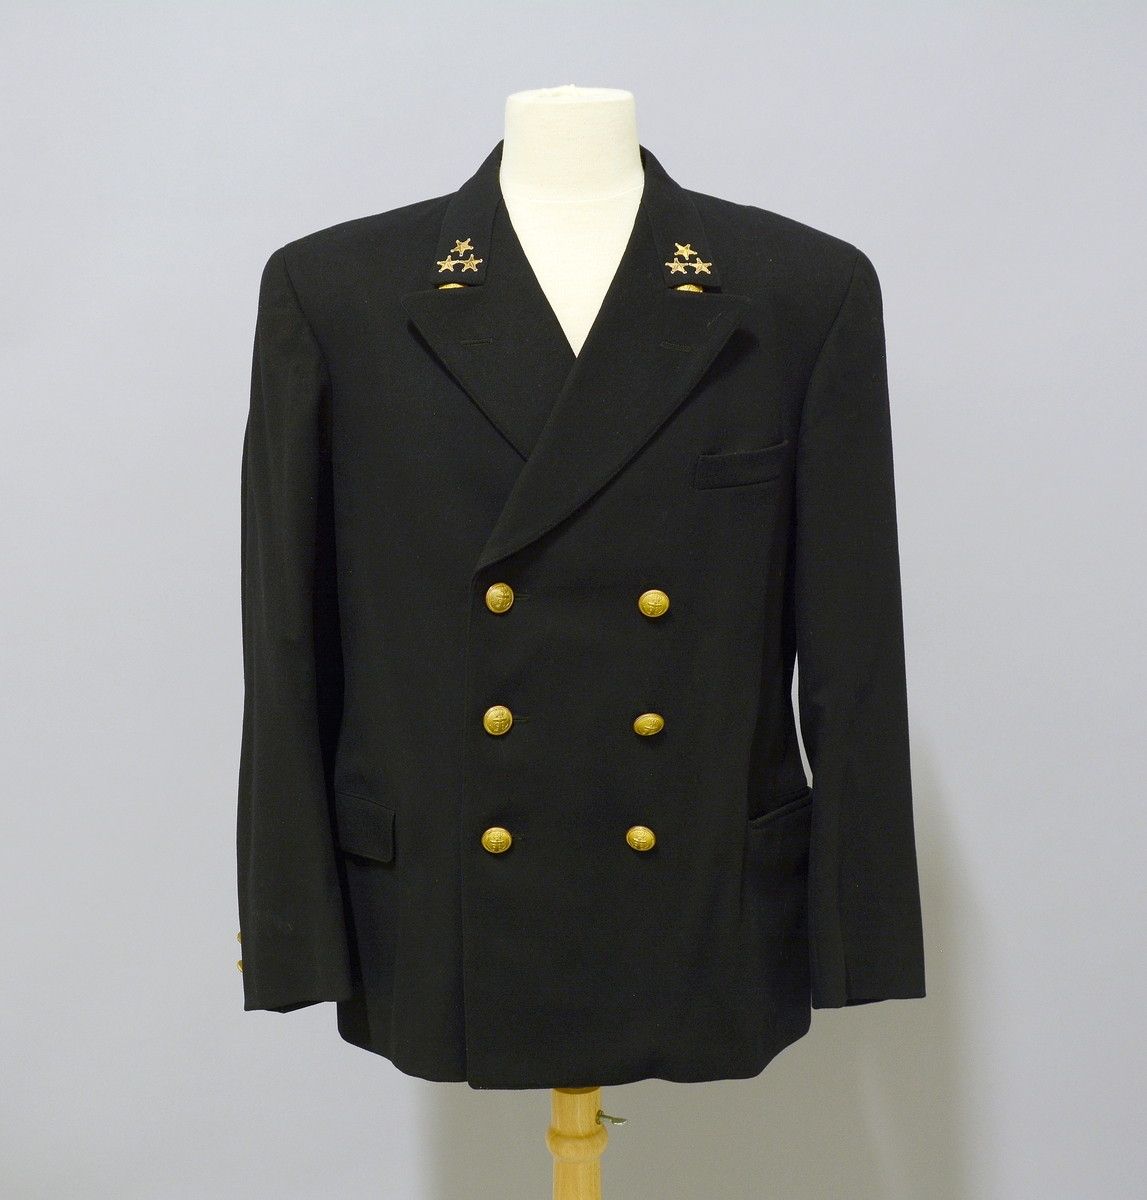 Uniformsjakke til Telemarksbåtene. Sort uniformsjakke i ull. Kraven har tre påsydde stjerner på hver side. Foran er det tre stk knapper med anker på hver side av åpningen, samt to lommer med klaff og brystlomme.